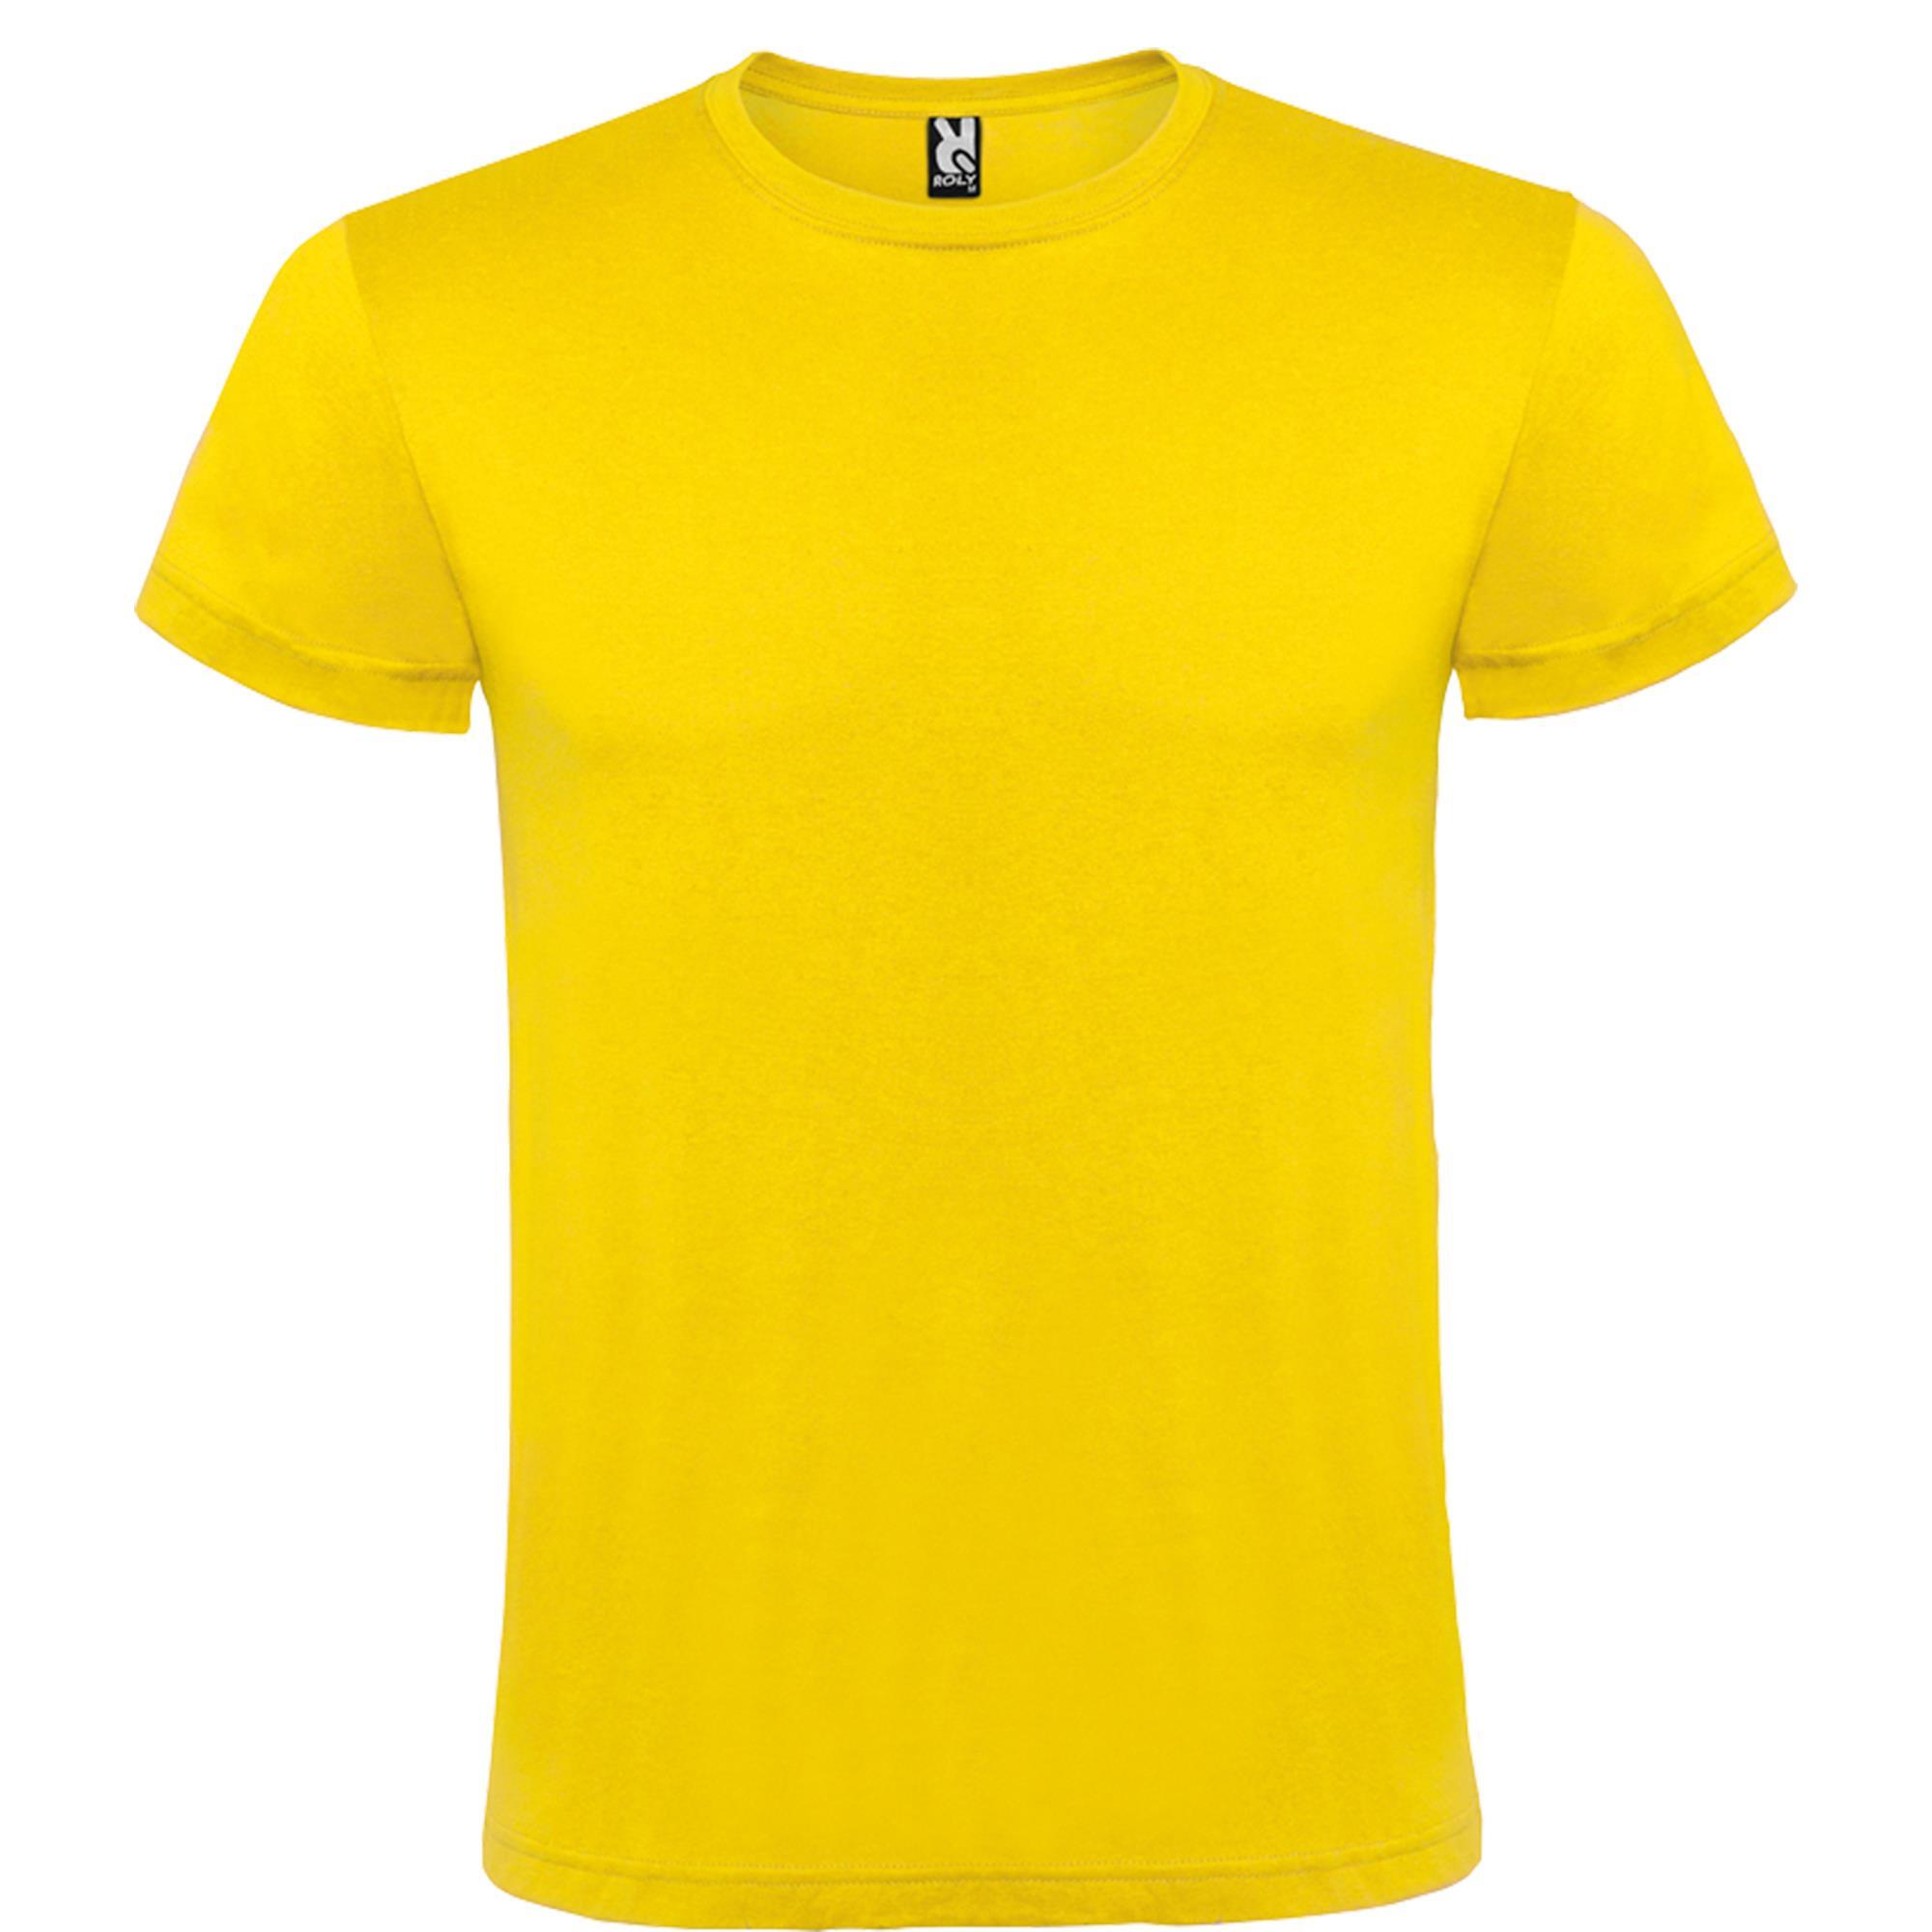 Rondgebreide T-shirt unisex voor volwassen geel personalisatie mogelijk